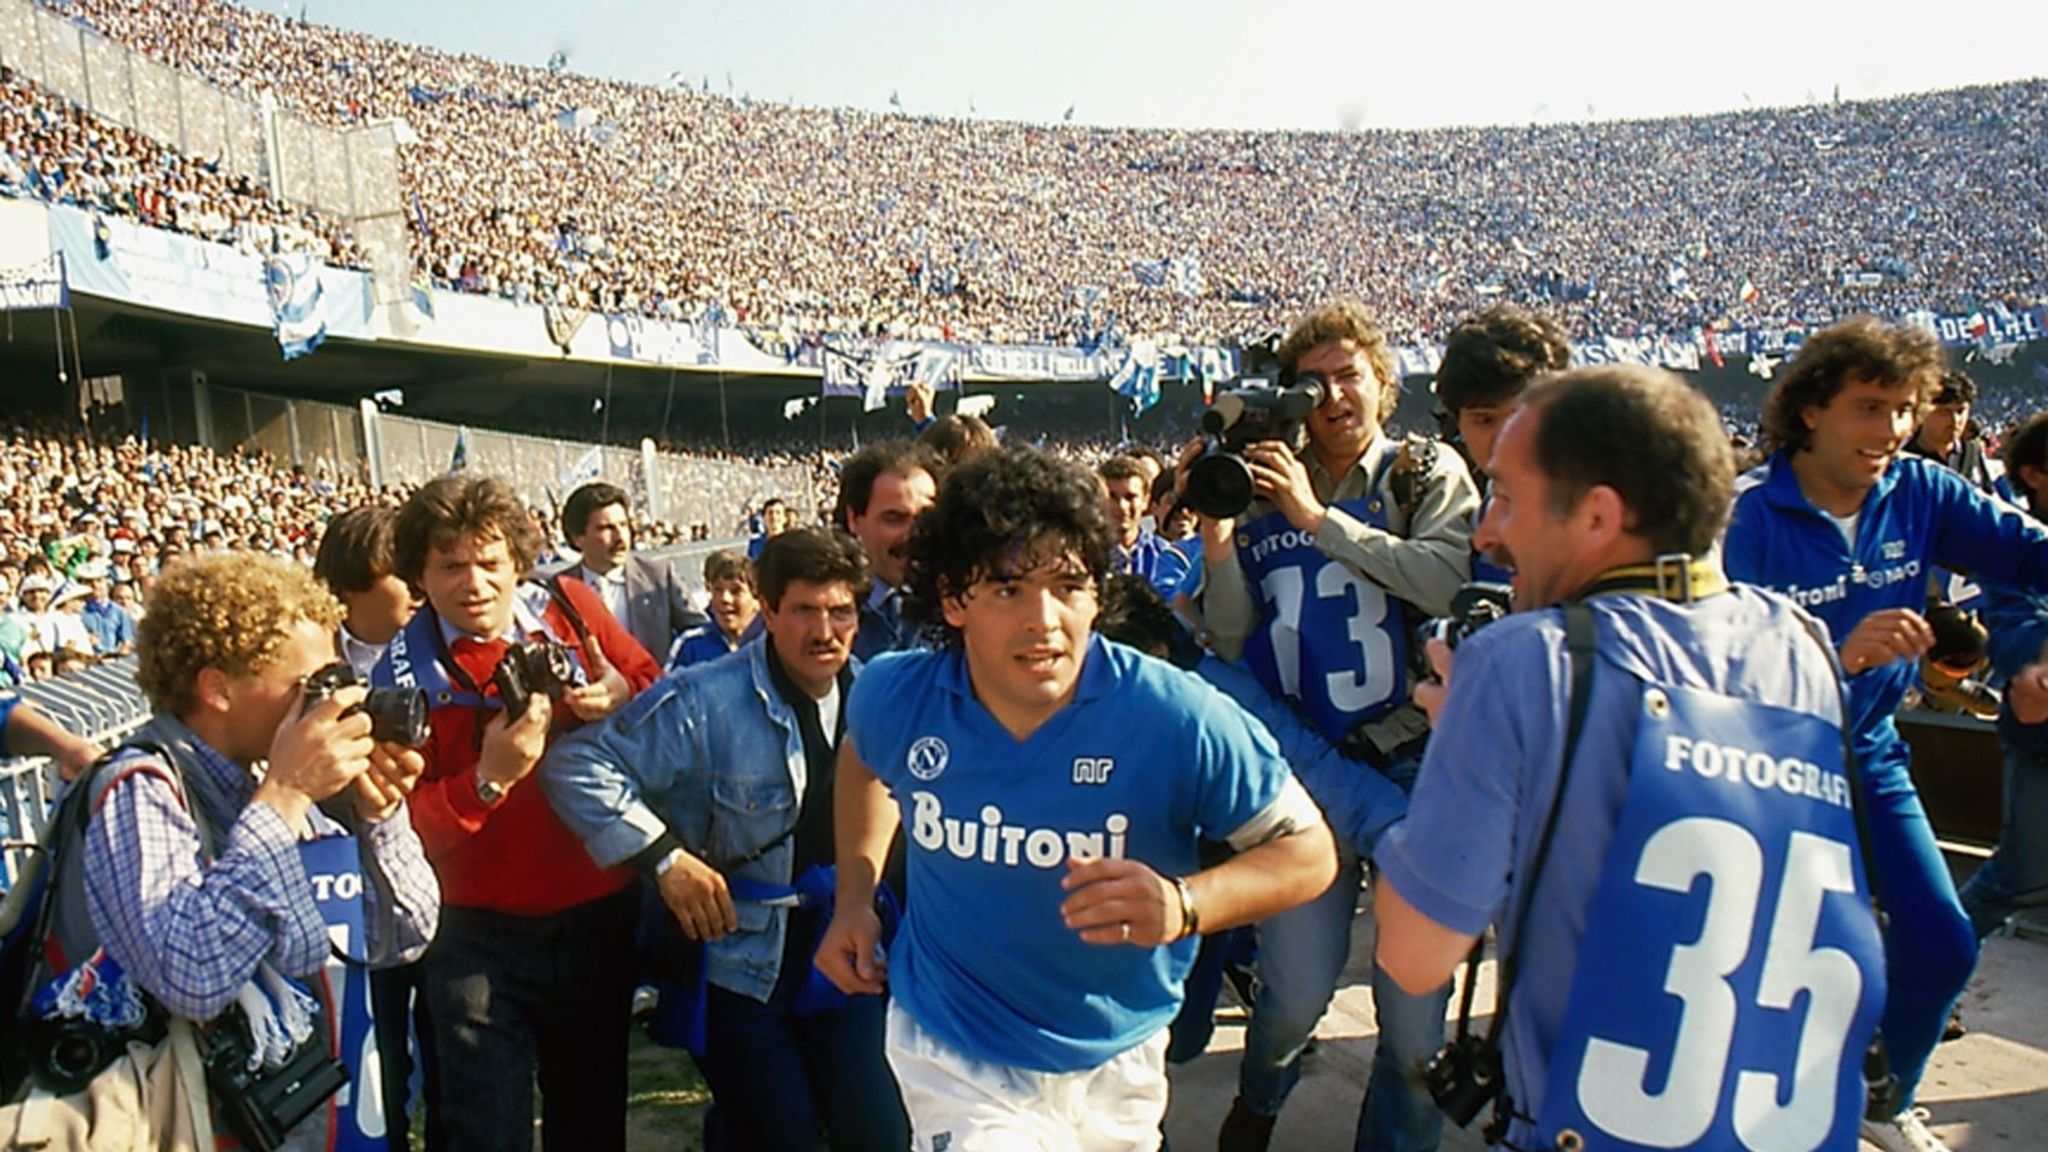 Mối tình giữa Maradona và ma túy được cho là đã nảy nở sâu đậm ở Napoli vào giữa thập niên 1980